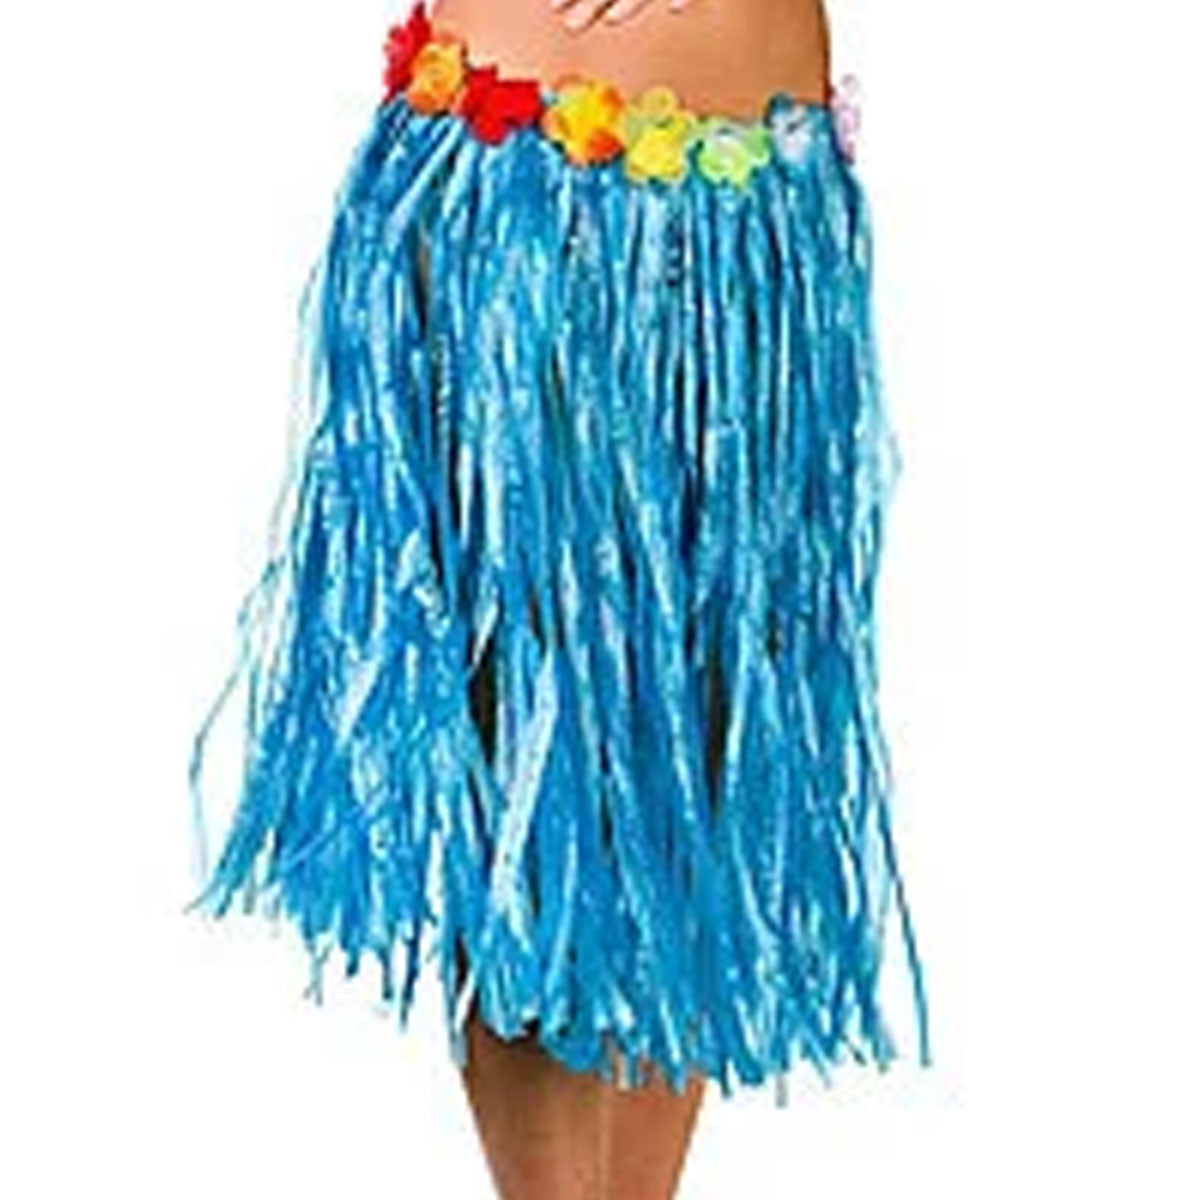 Юбка гавайская с цветами 59 см (синяя)